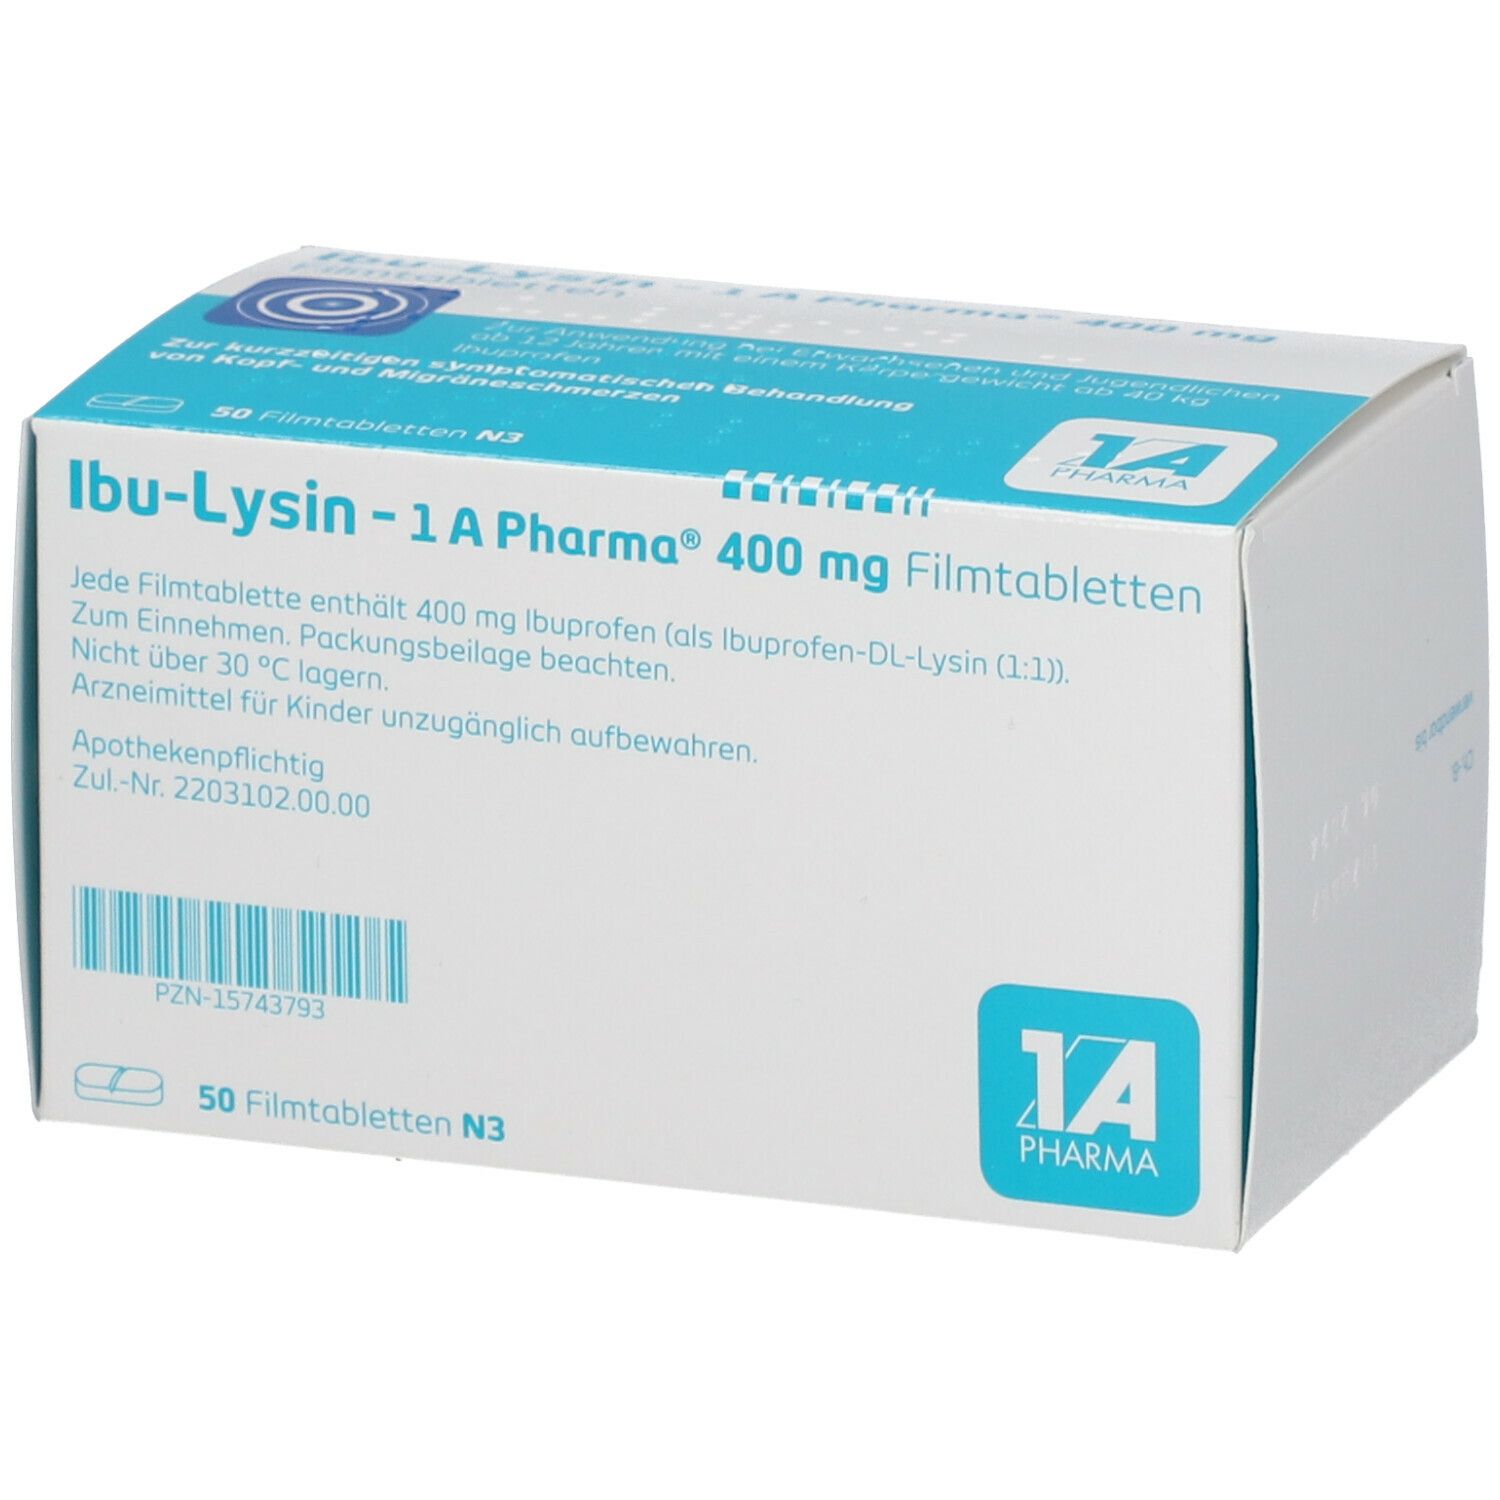 Ibu-Lysin - 1A Pharma® 400 mg